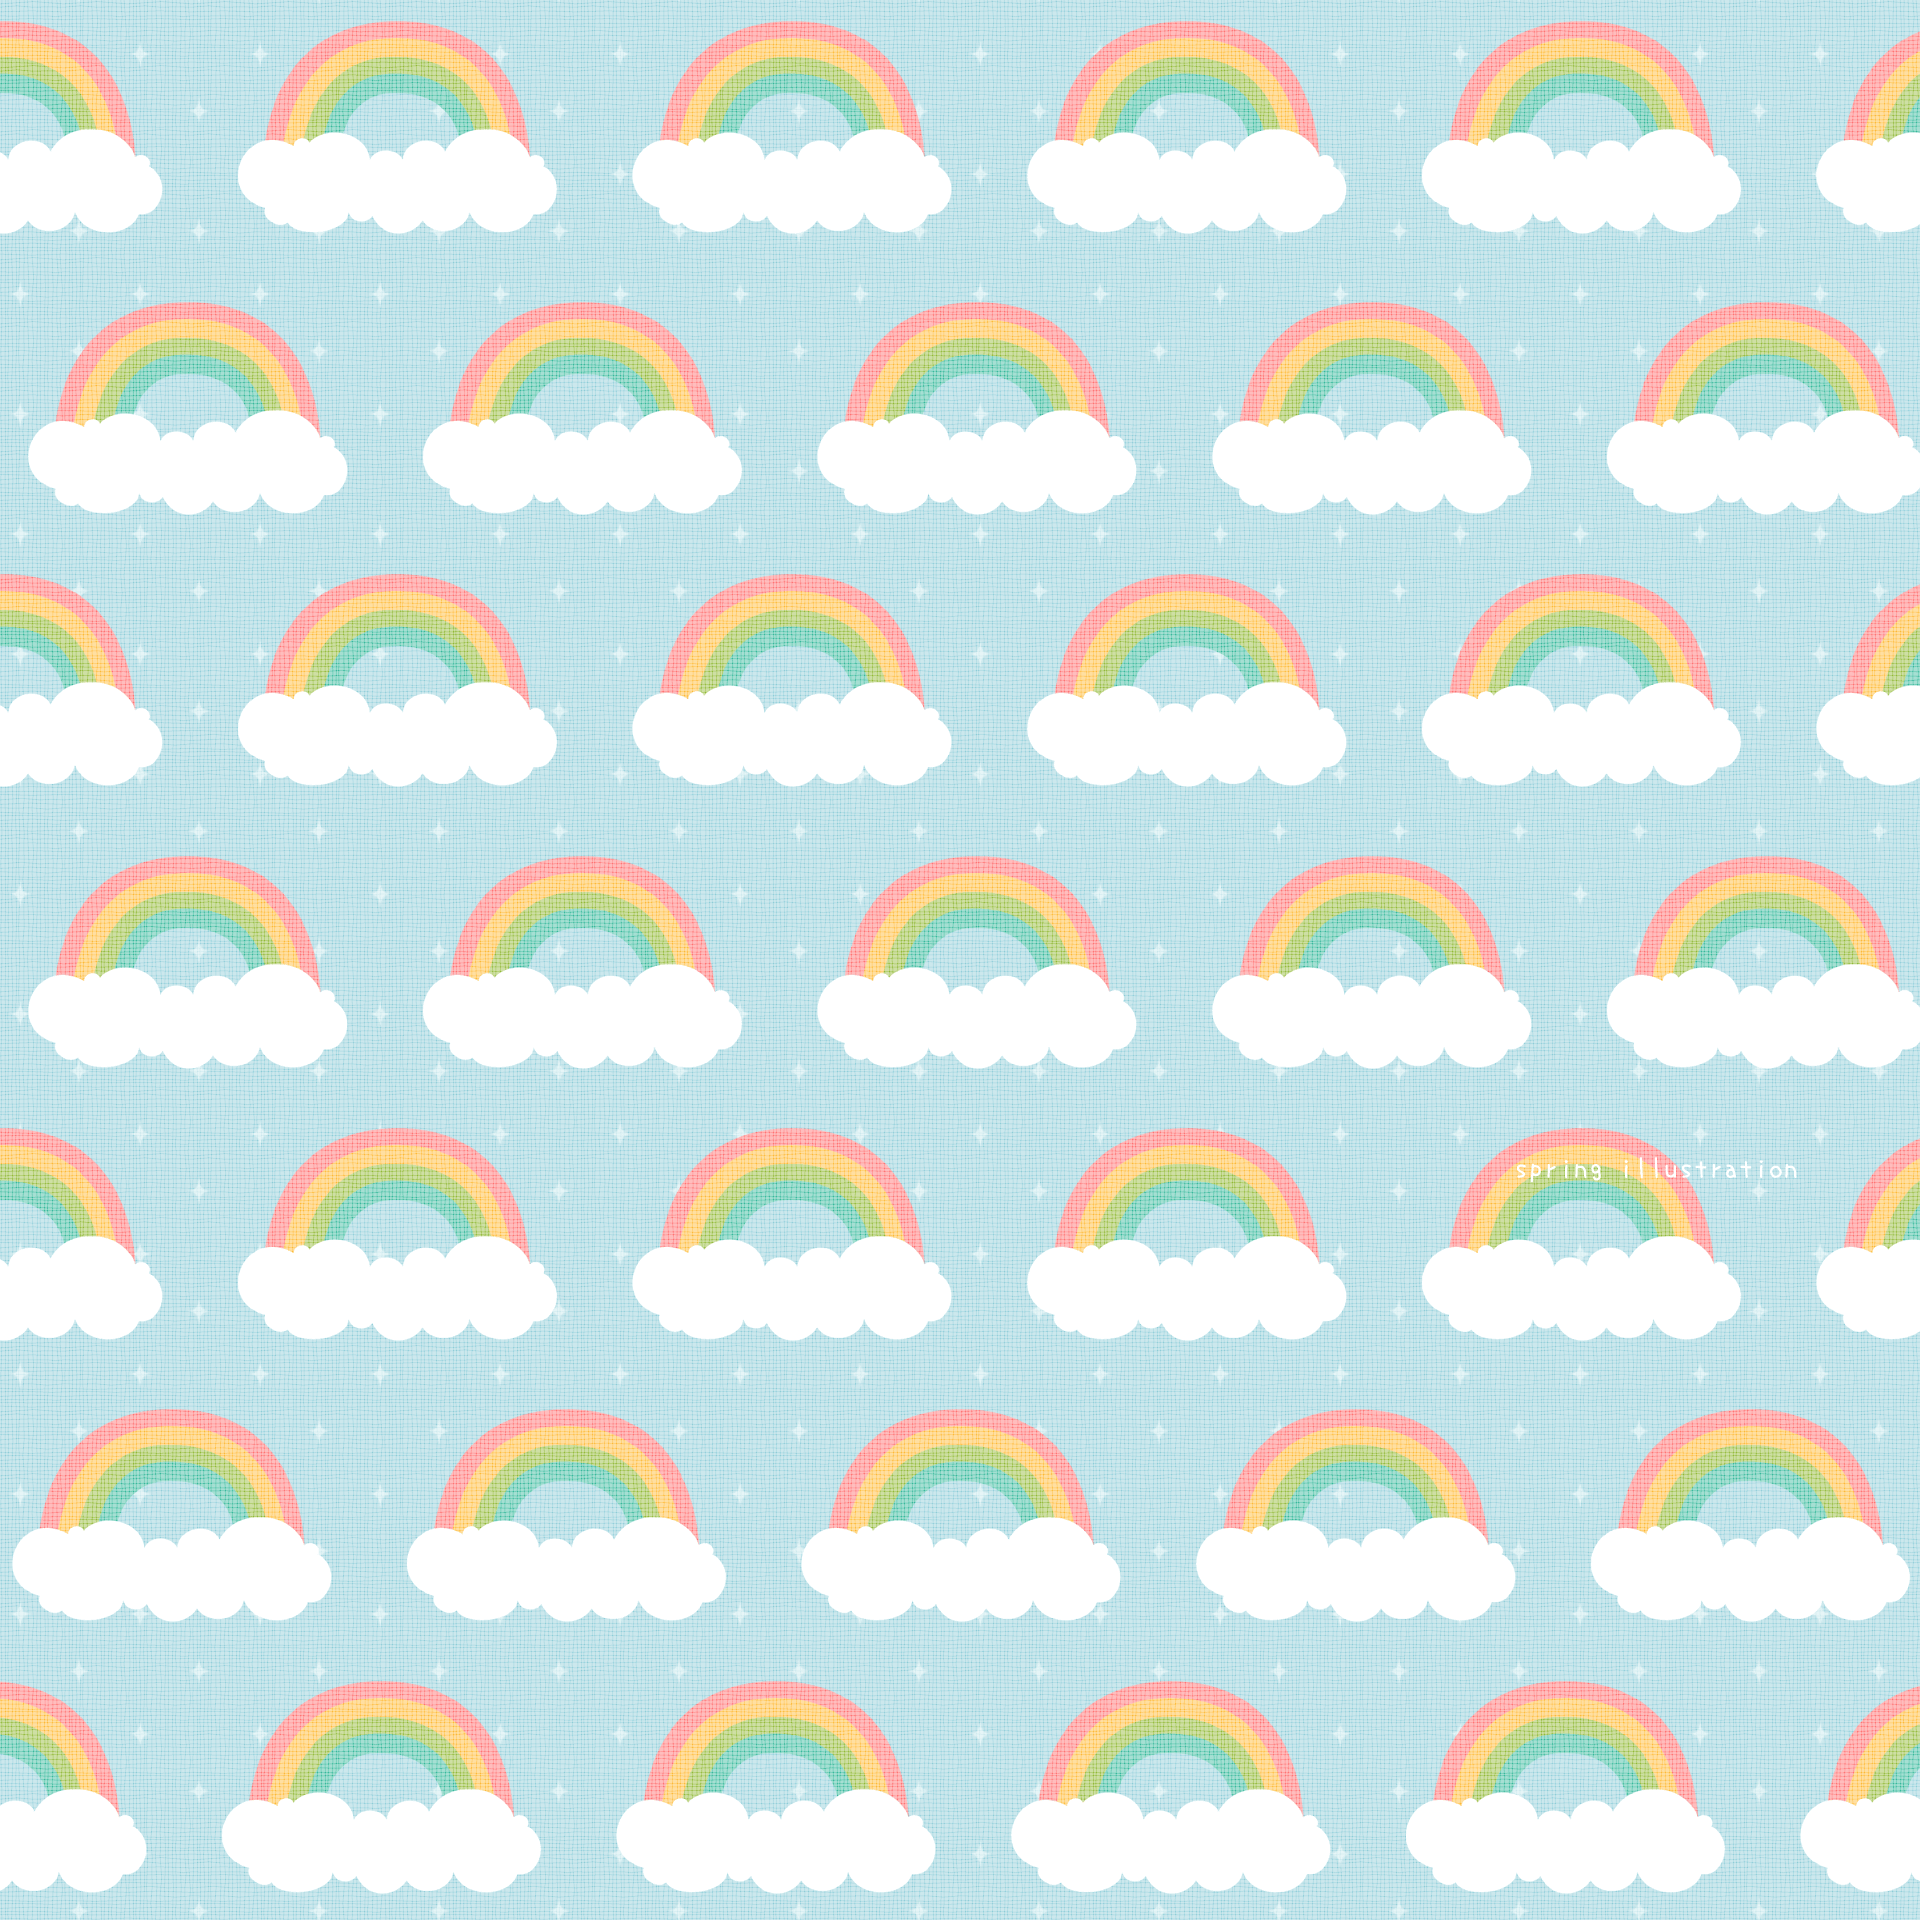 【Rainbow】空のイラストましかく壁紙・背景